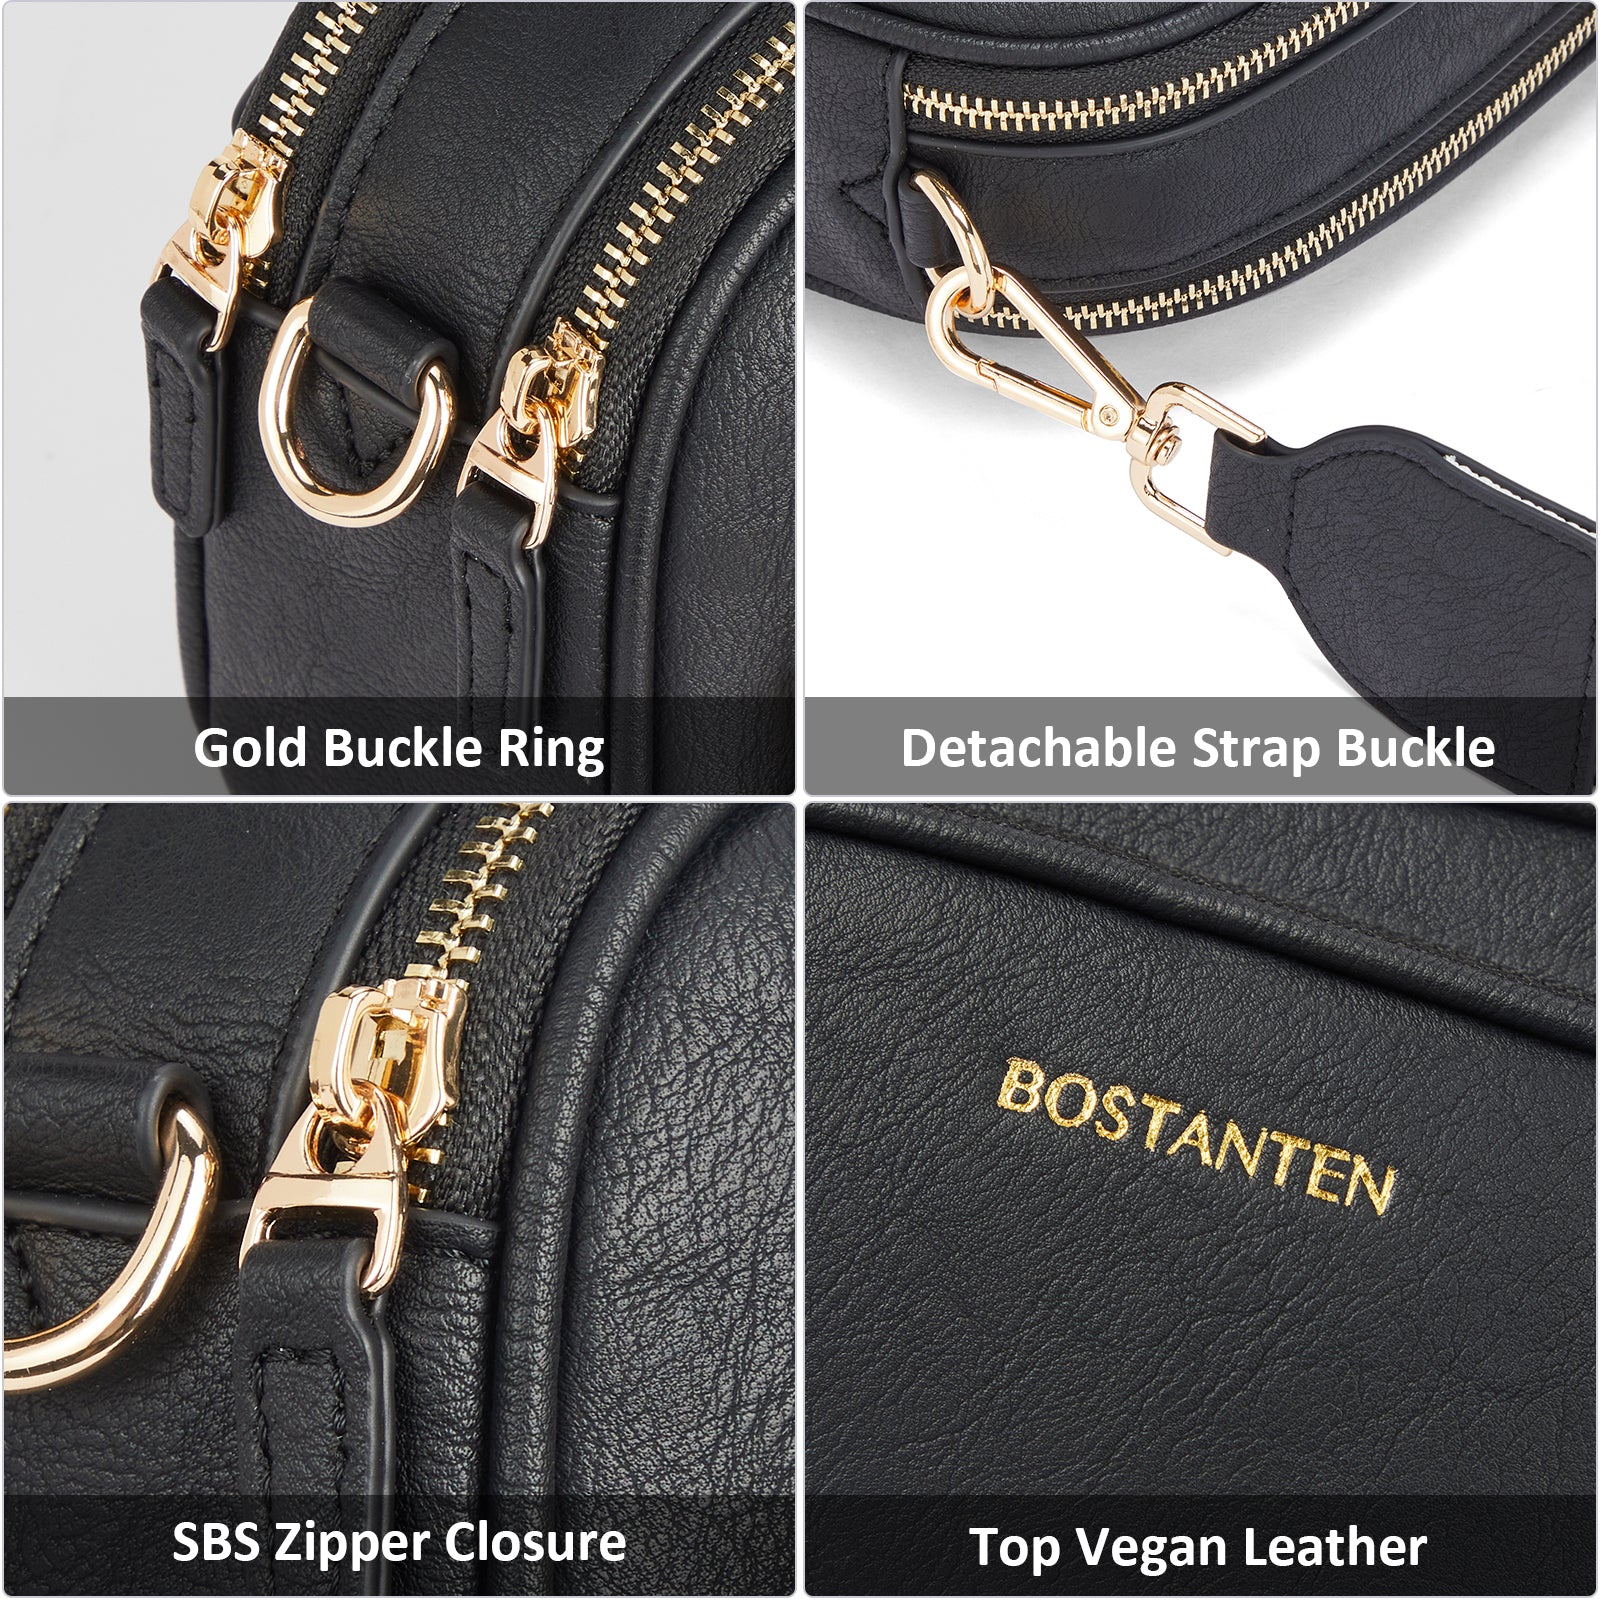 Bostan Ten BOSTANTEN Small Crossbody Purse for Women Triple Zip Leather Handbag with Colored Shoulder Strap, Women's